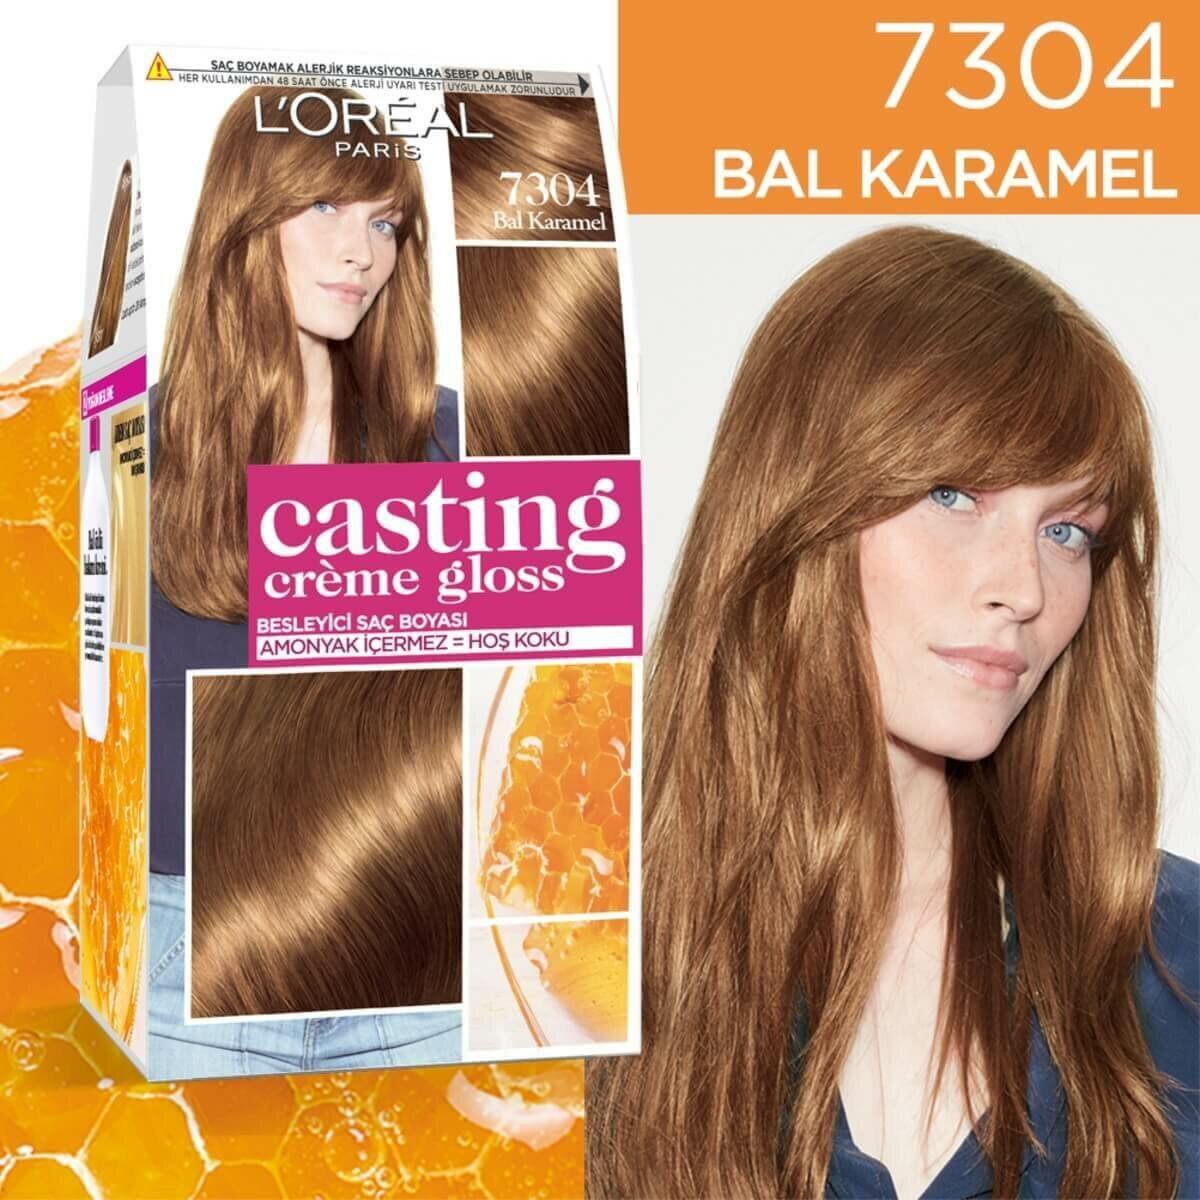 L'oreal Paris Casting Creme Gloss Saç Boyası 7304 Bal Karamel